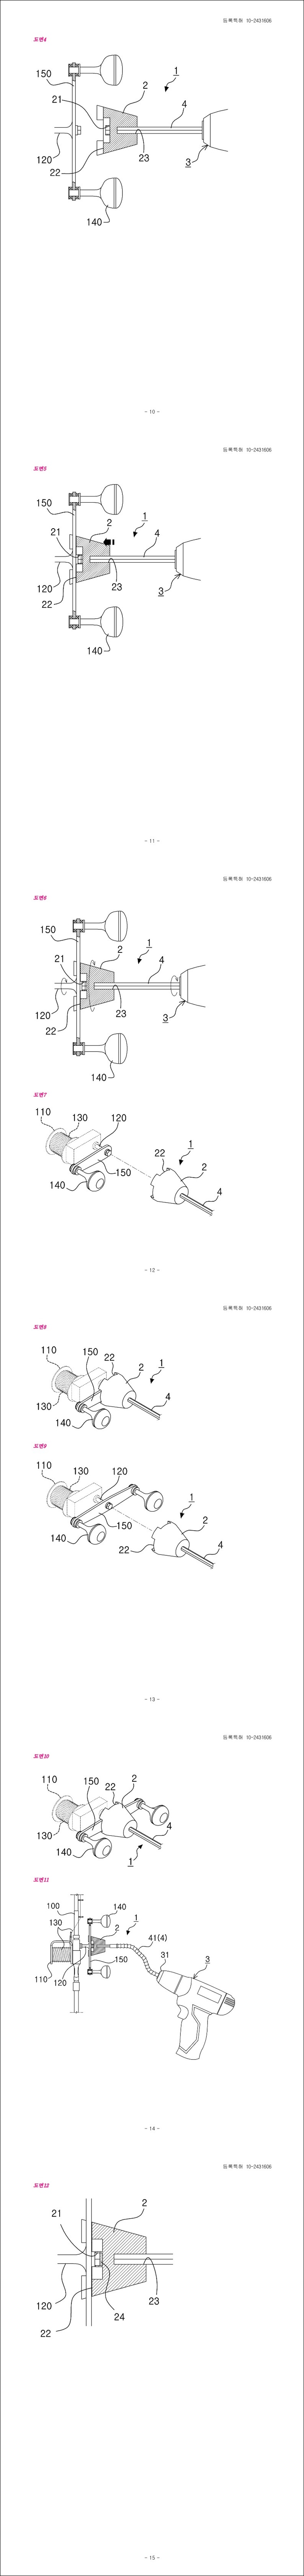 특허 제10-2431606호(릴낚시용 권선장치, (주)라인디지털)